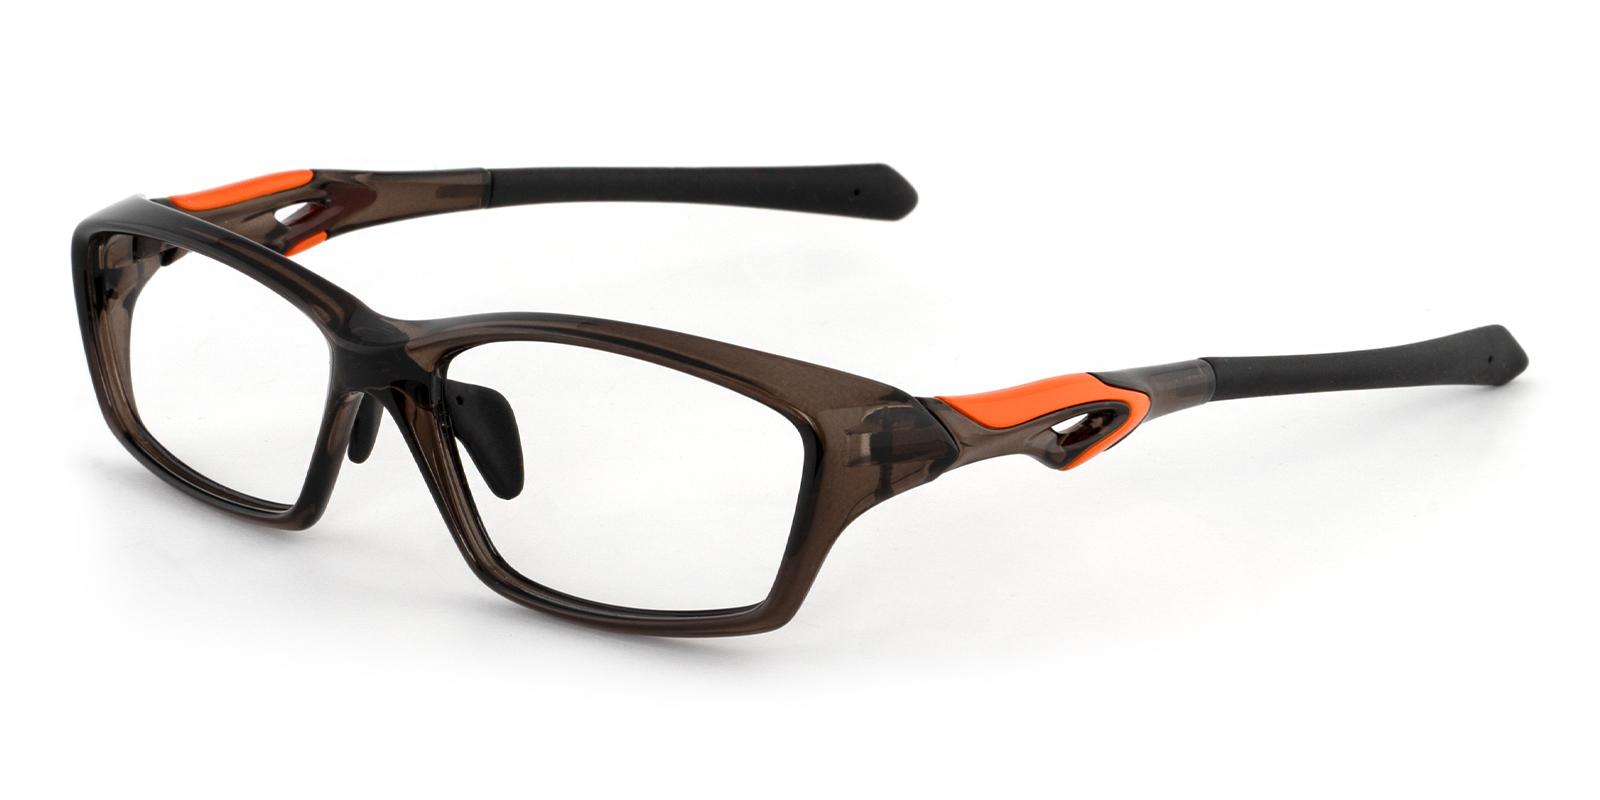 Magellan Gray TR NosePads , SportsGlasses , SpringHinges Frames from ABBE Glasses